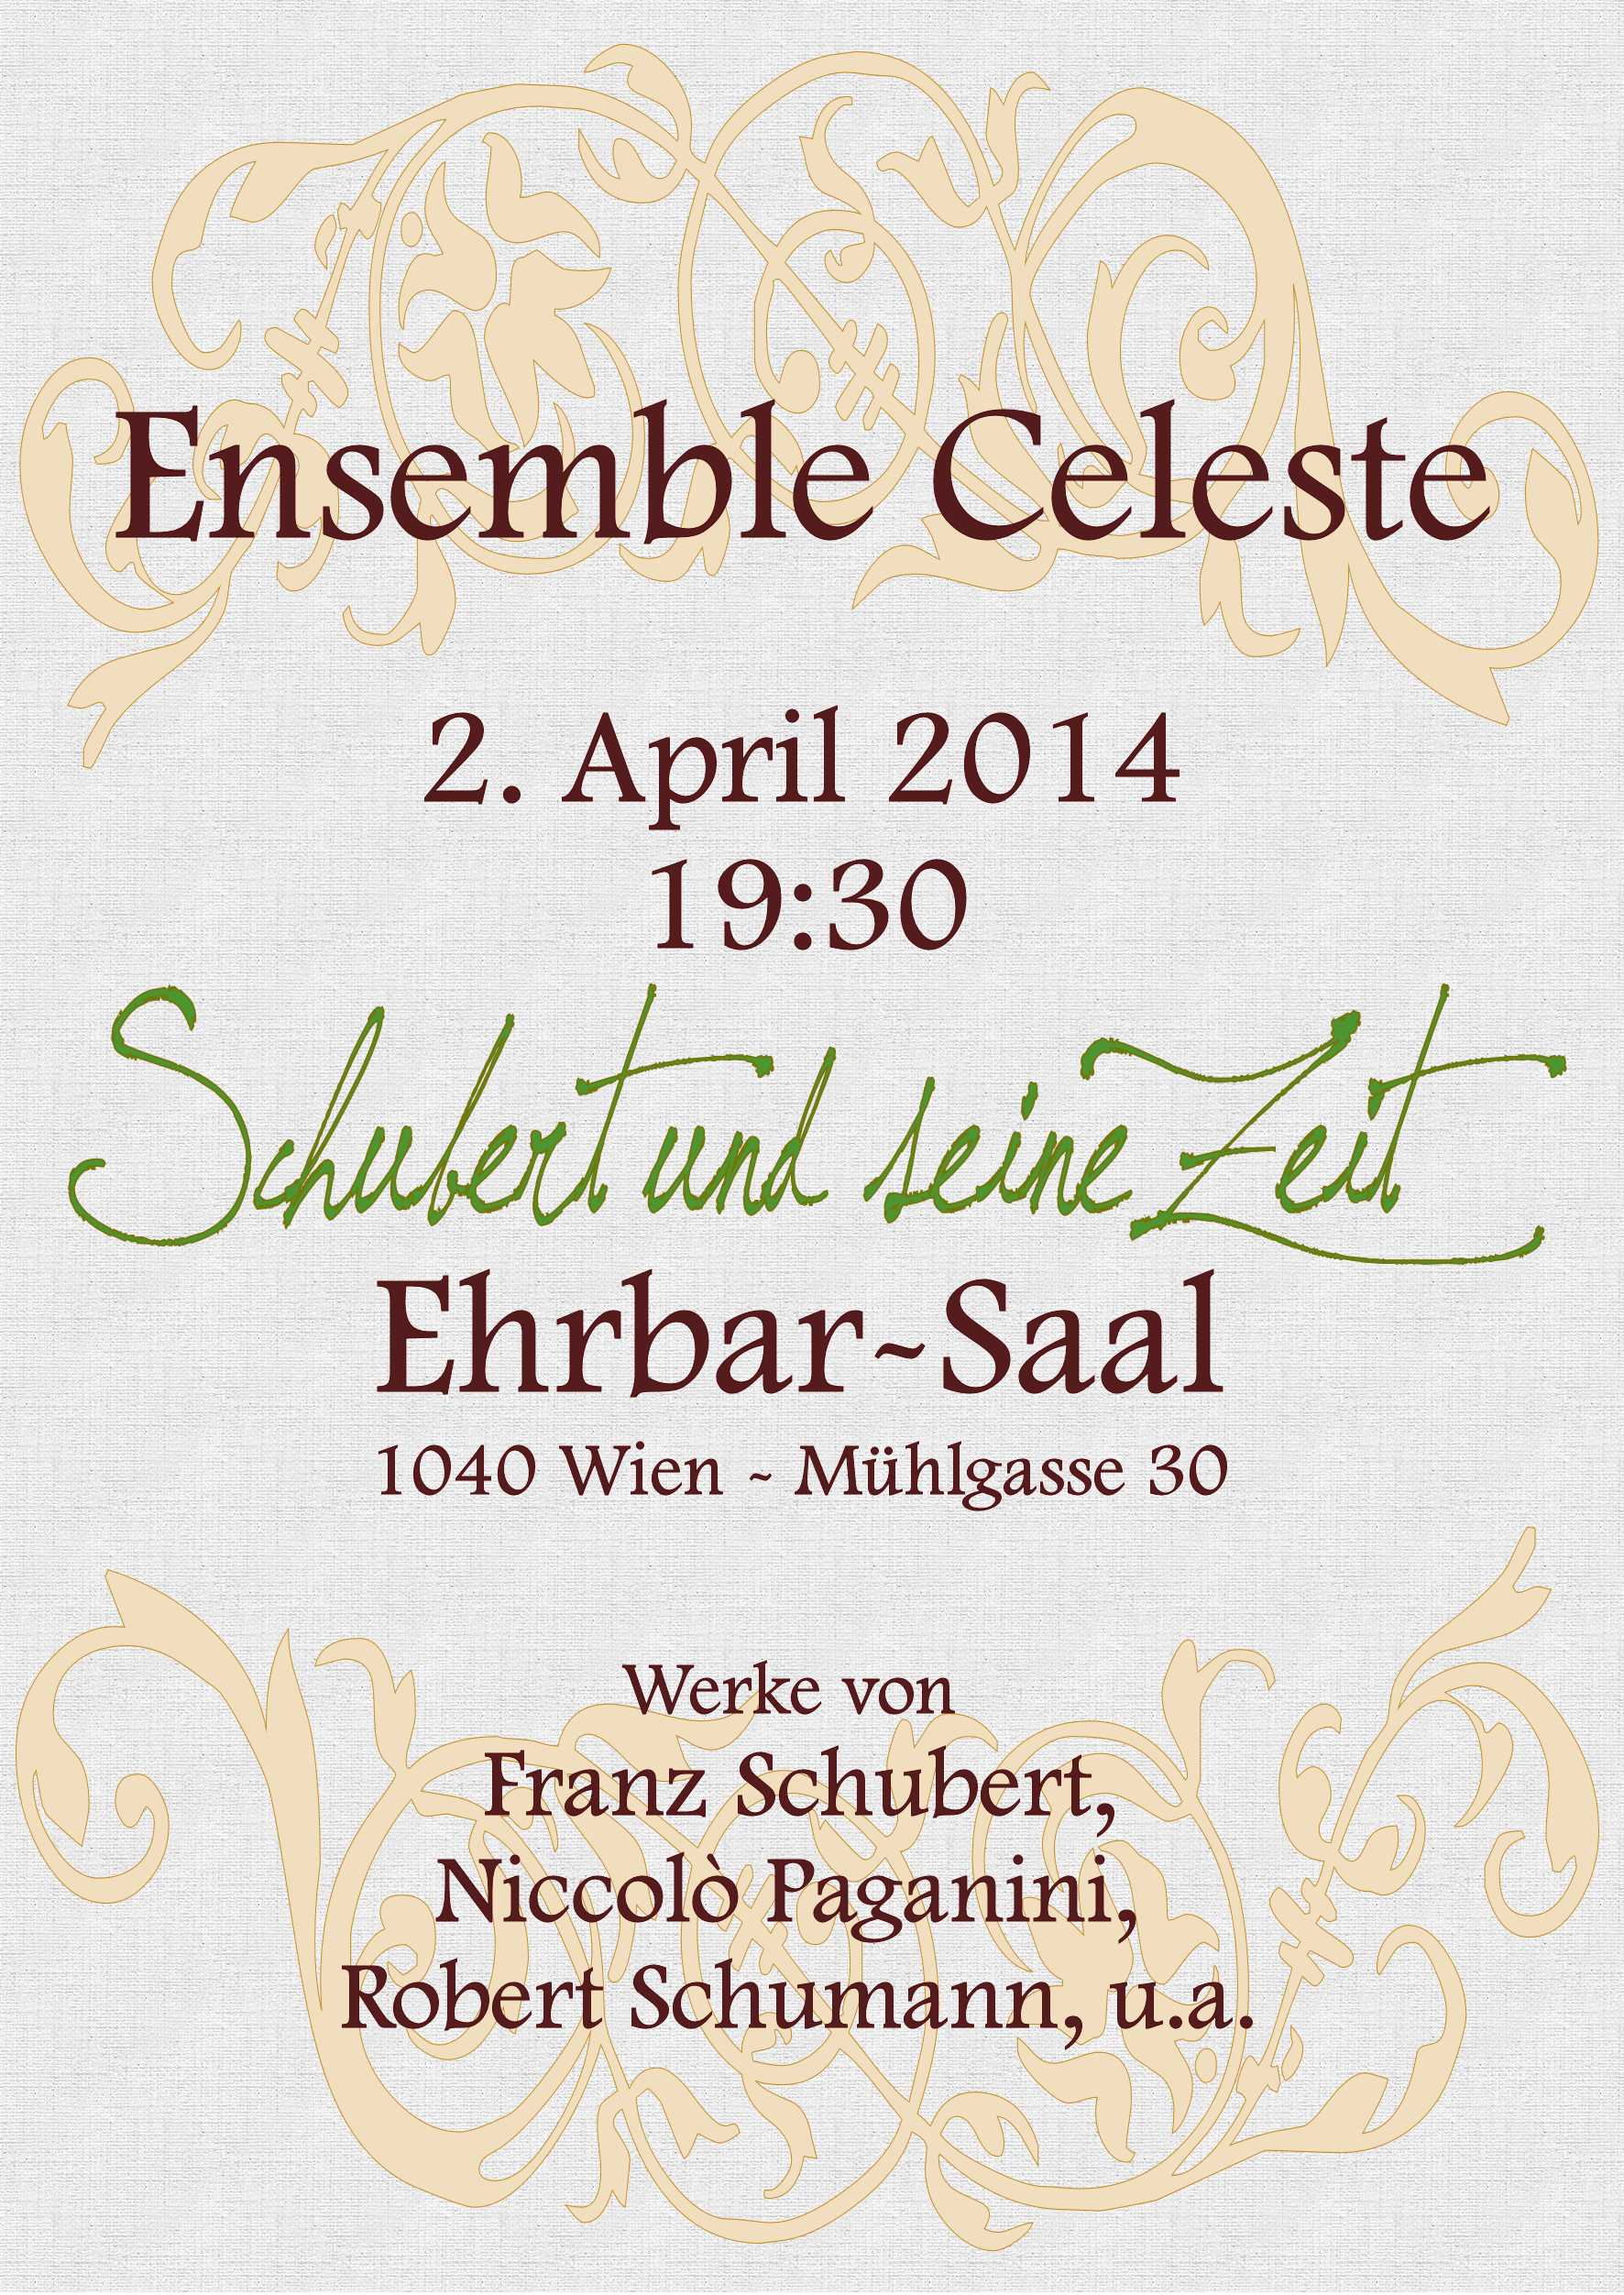 Ensemble Celeste - Schubert und seine Zeit